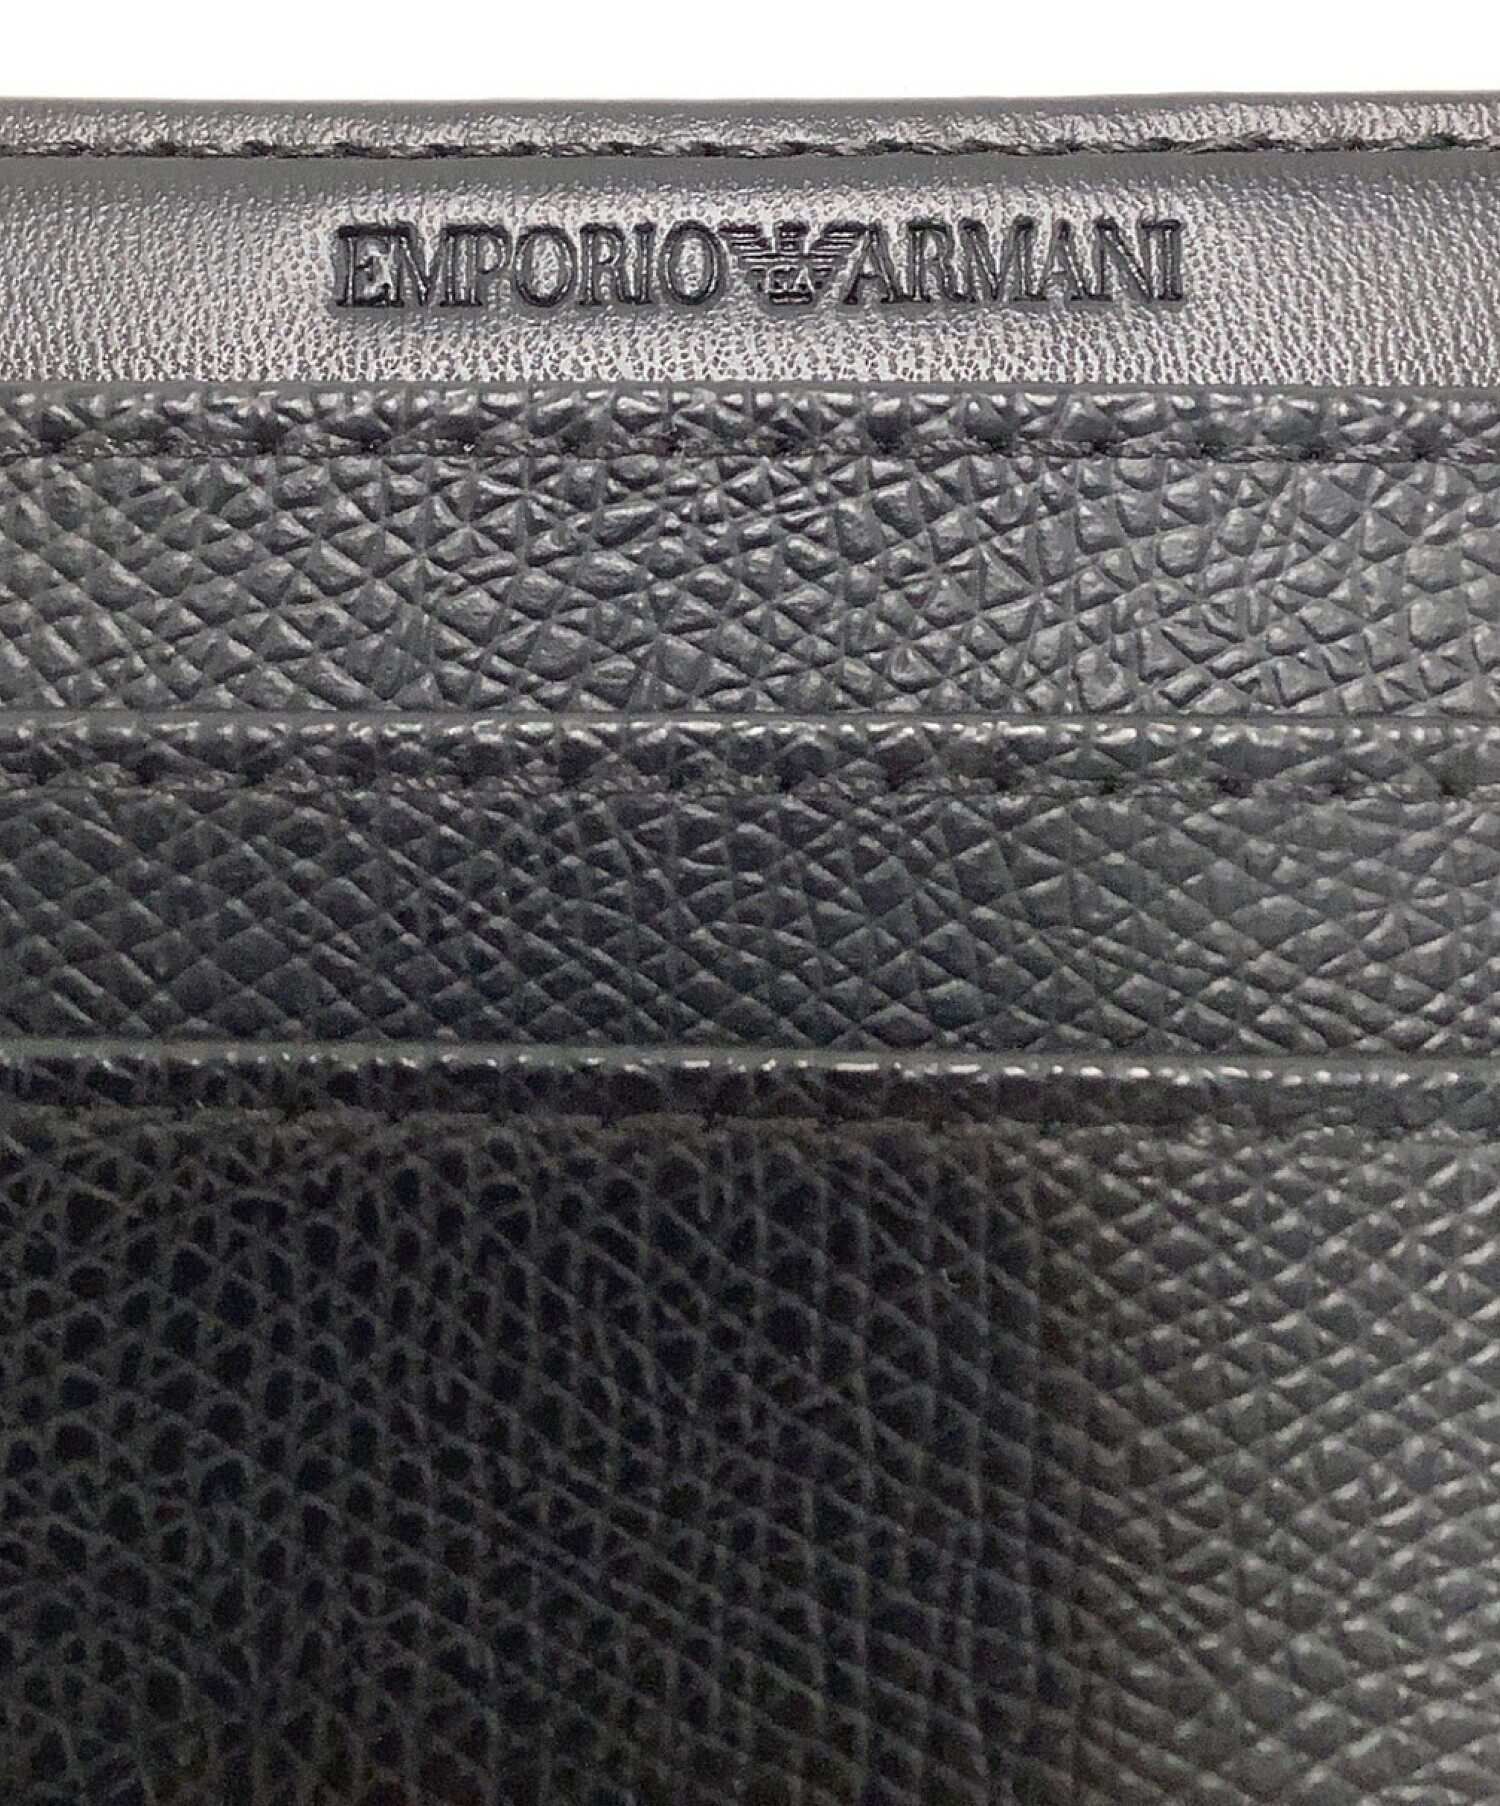 EMPORIO ARMANI (エンポリオアルマーニ) カードケース ブラック